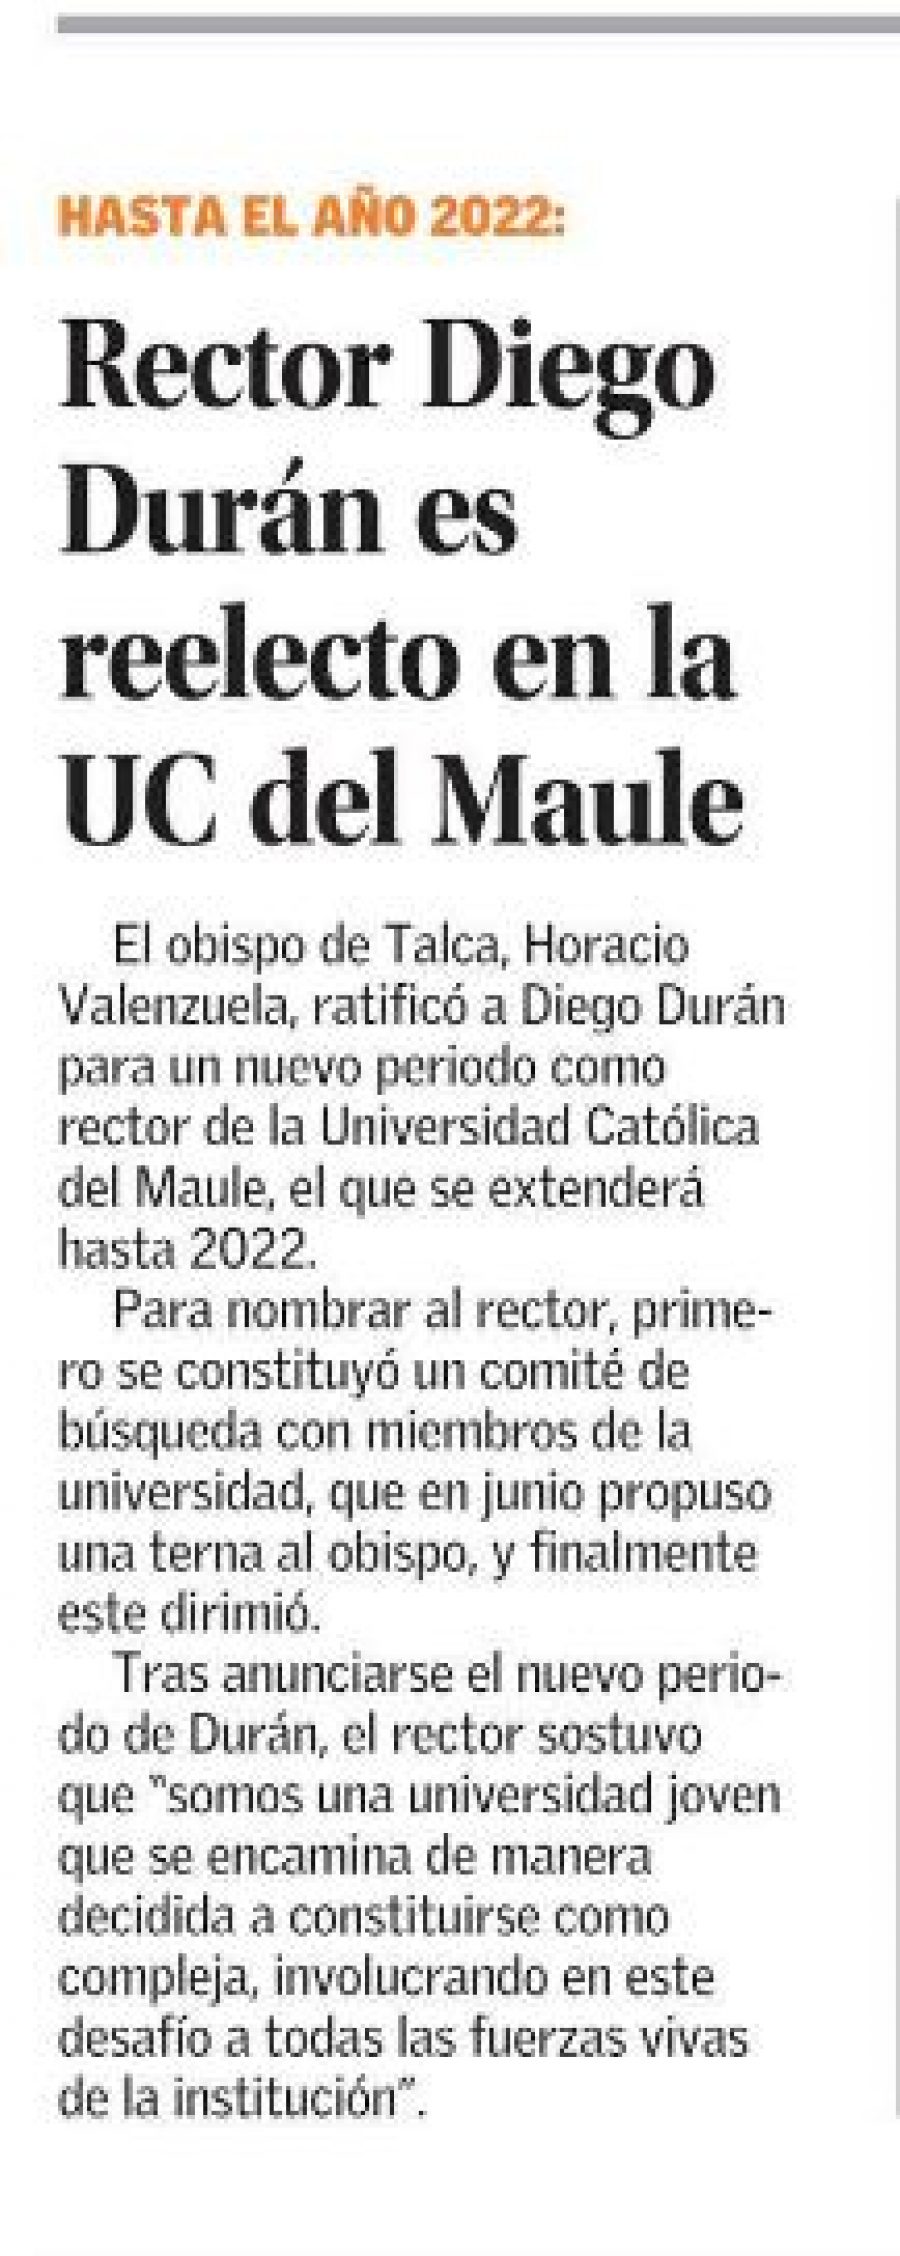 23 de julio en Diario El Mercurio: “Rector Diego Durán es reelecto en la UC del Maule”